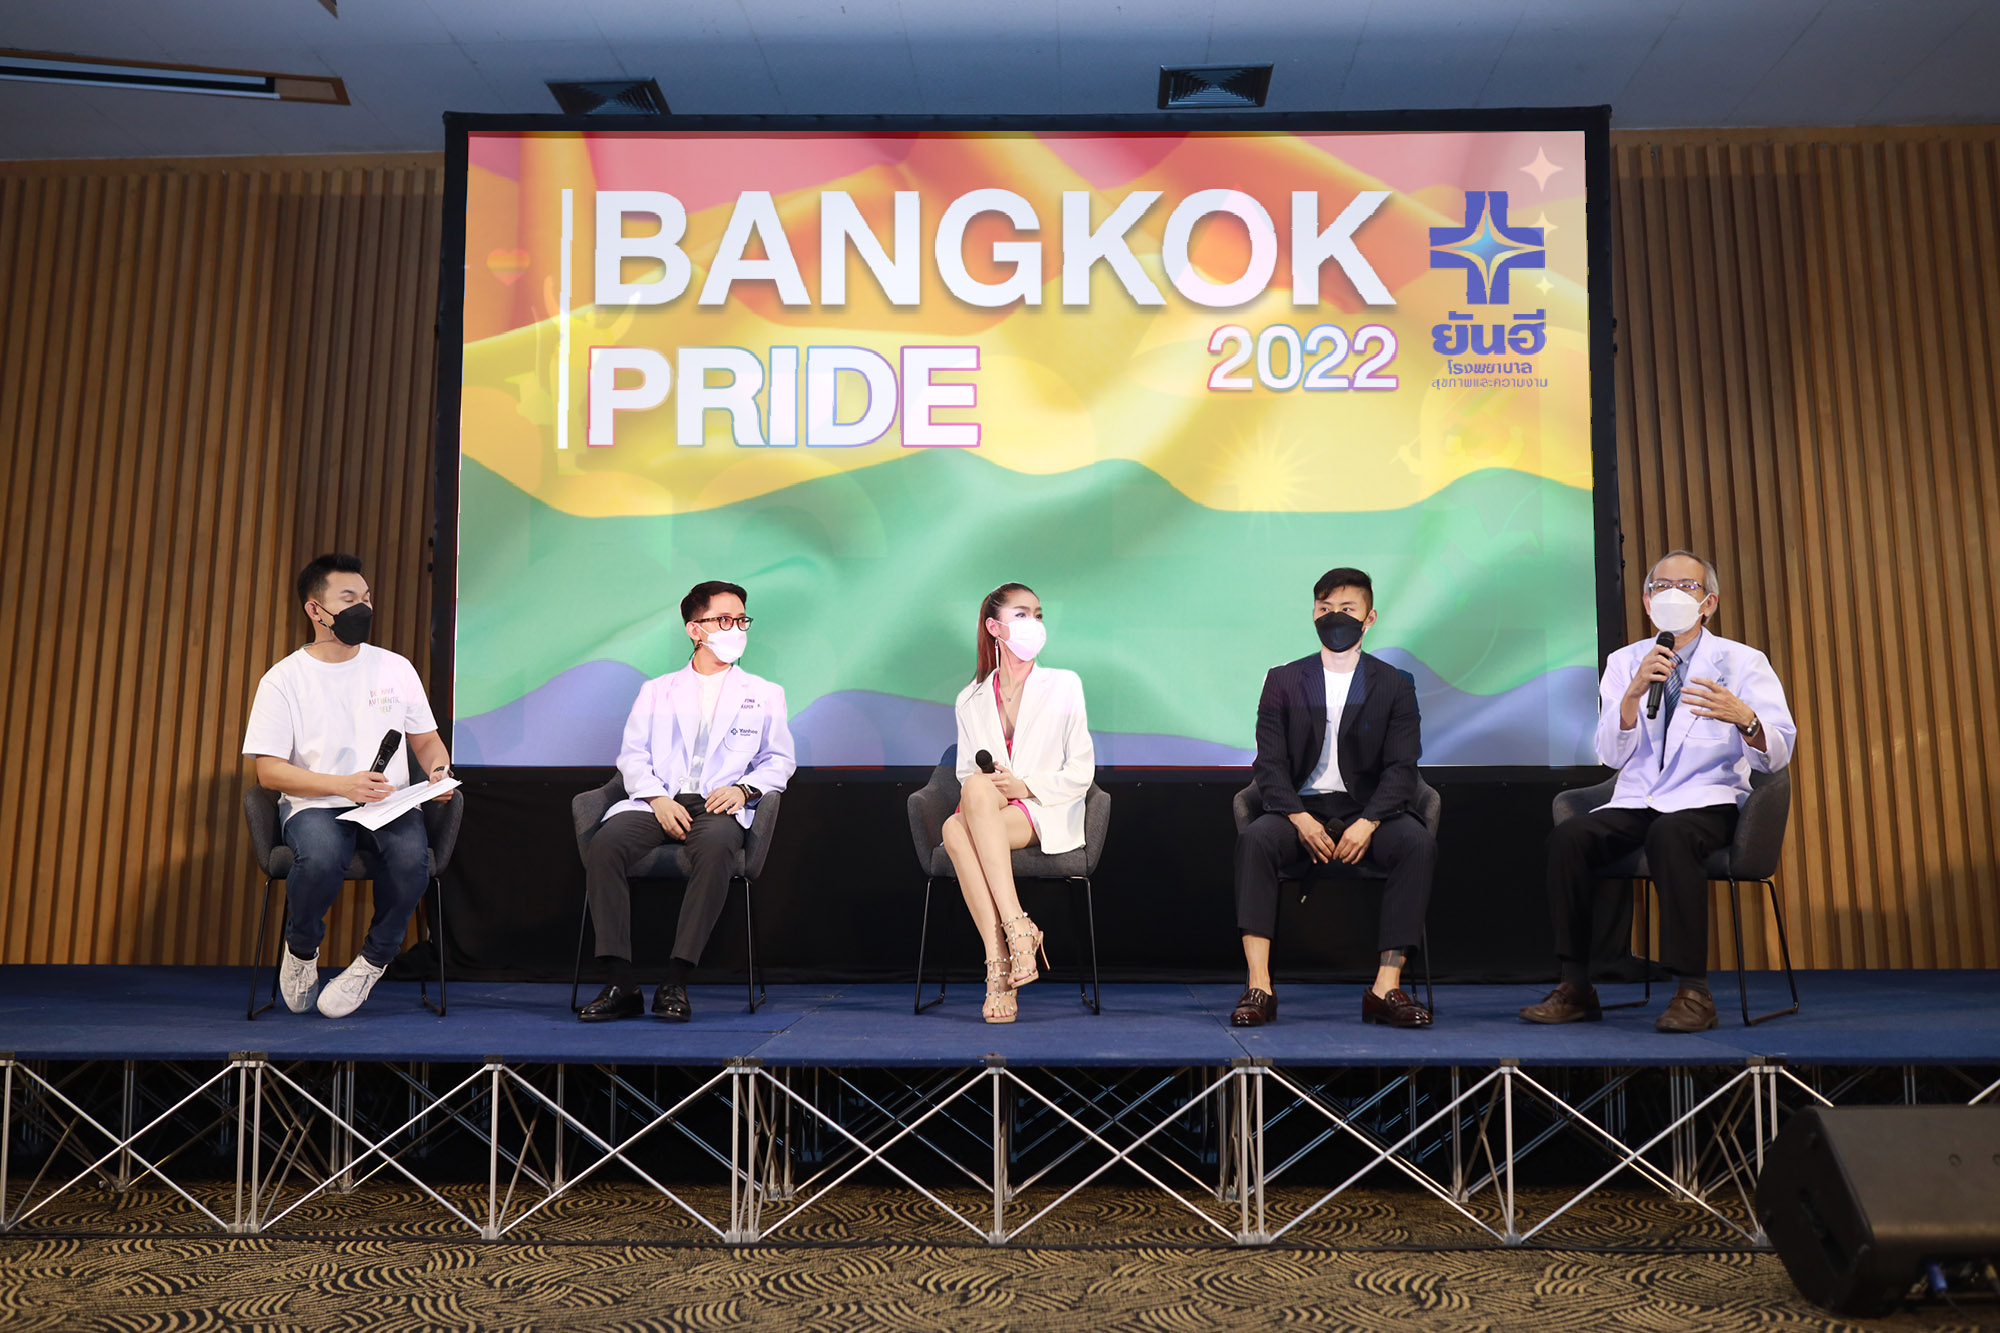 ยันฮี” โดดร่วมงาน “BANGKOK PRIDE 2022” ตามกระแสหลากหลายทางเพศ